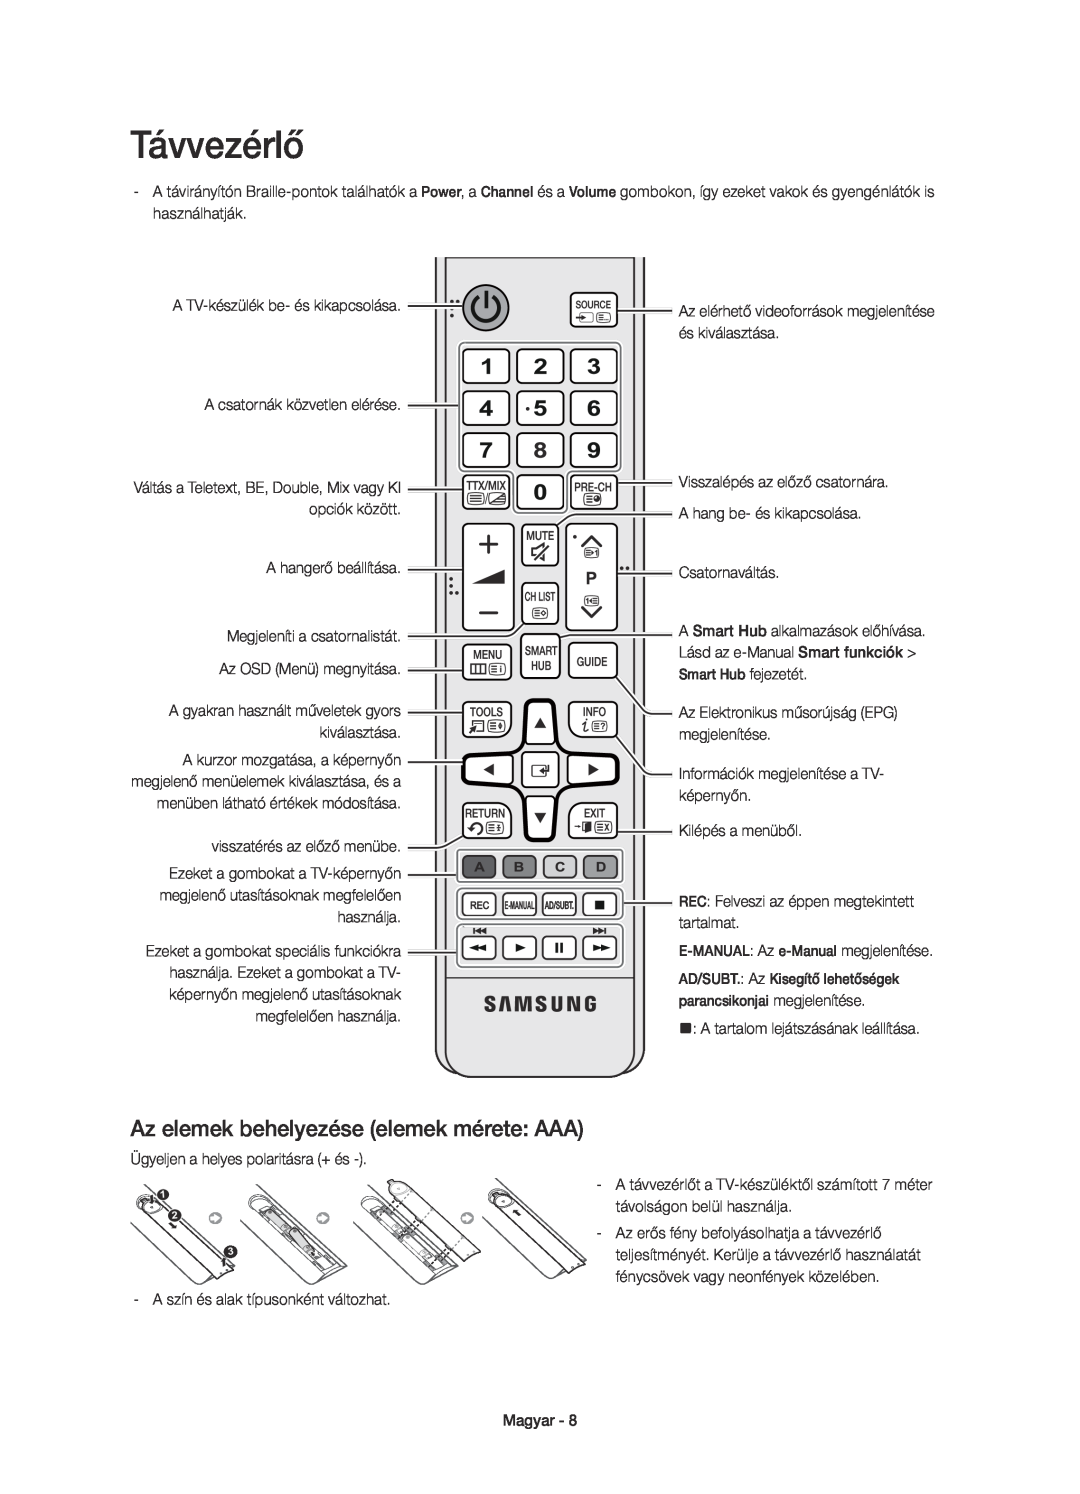 Samsung UE55H6500SLXZF manual Az elemek behelyezése elemek mérete AAA, Lásd az e-Manual Smart funkciók, Smart Hub fejezetét 